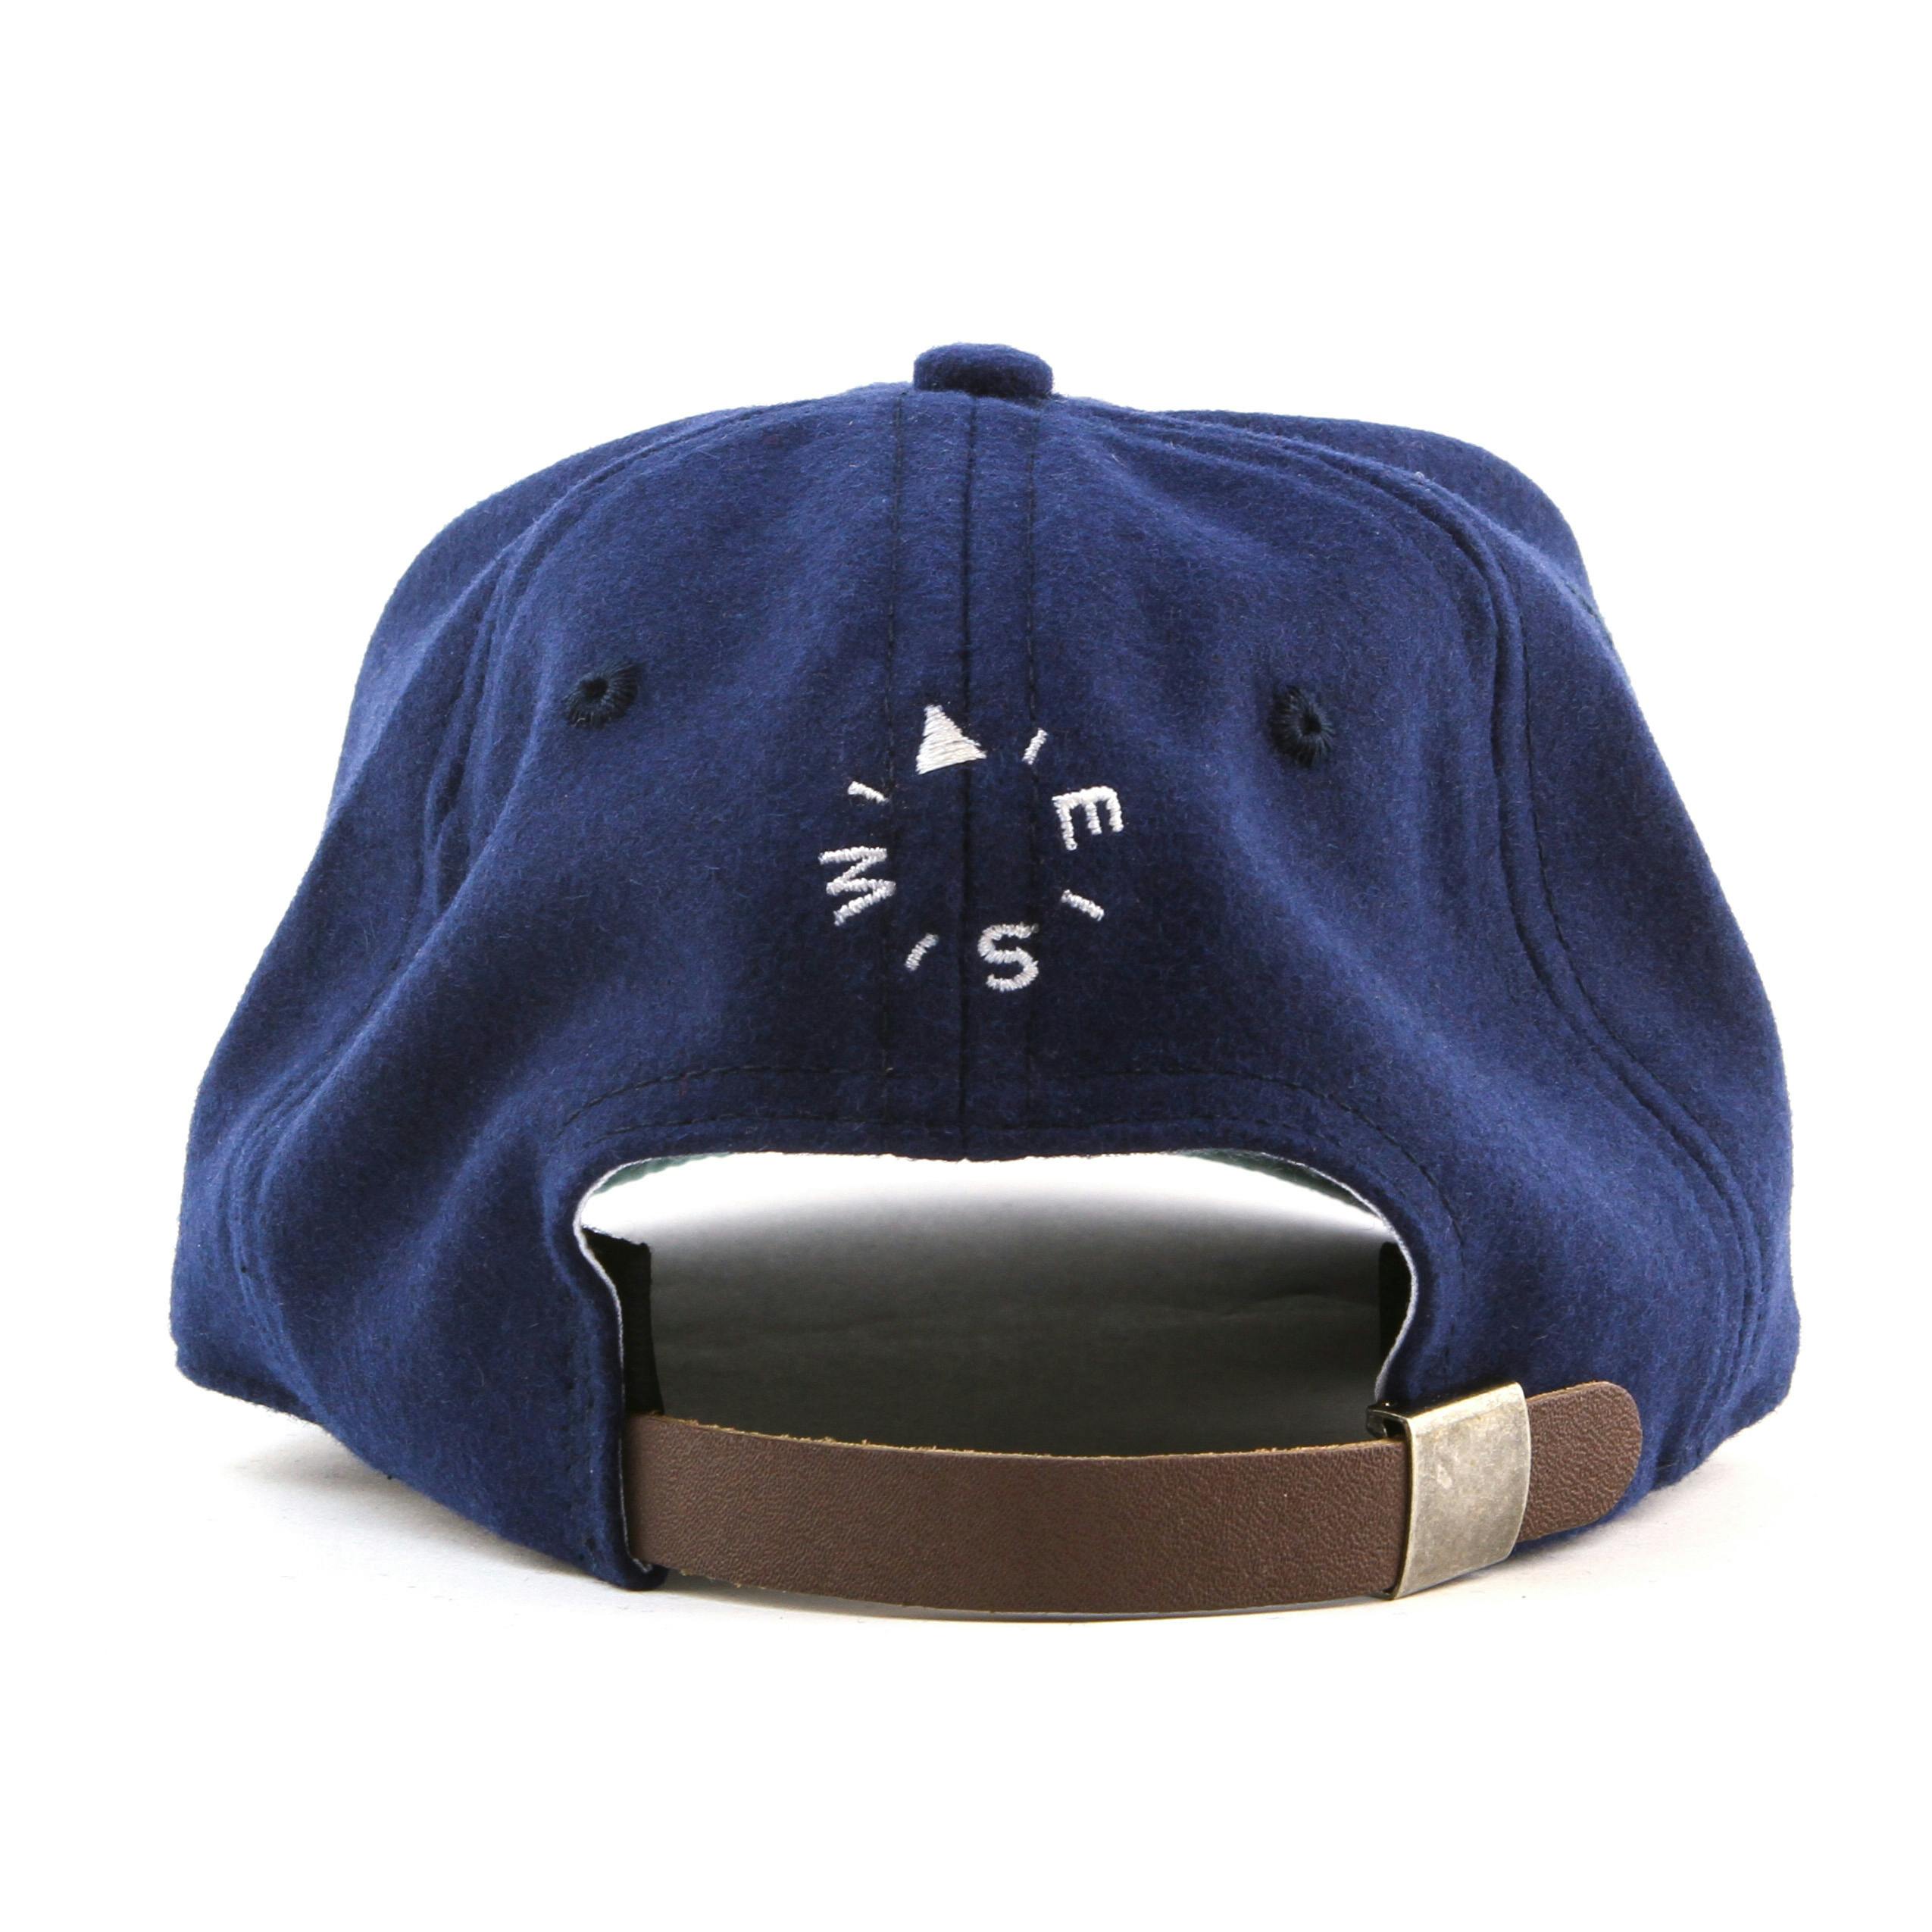 Huckberry Explorer's Cap